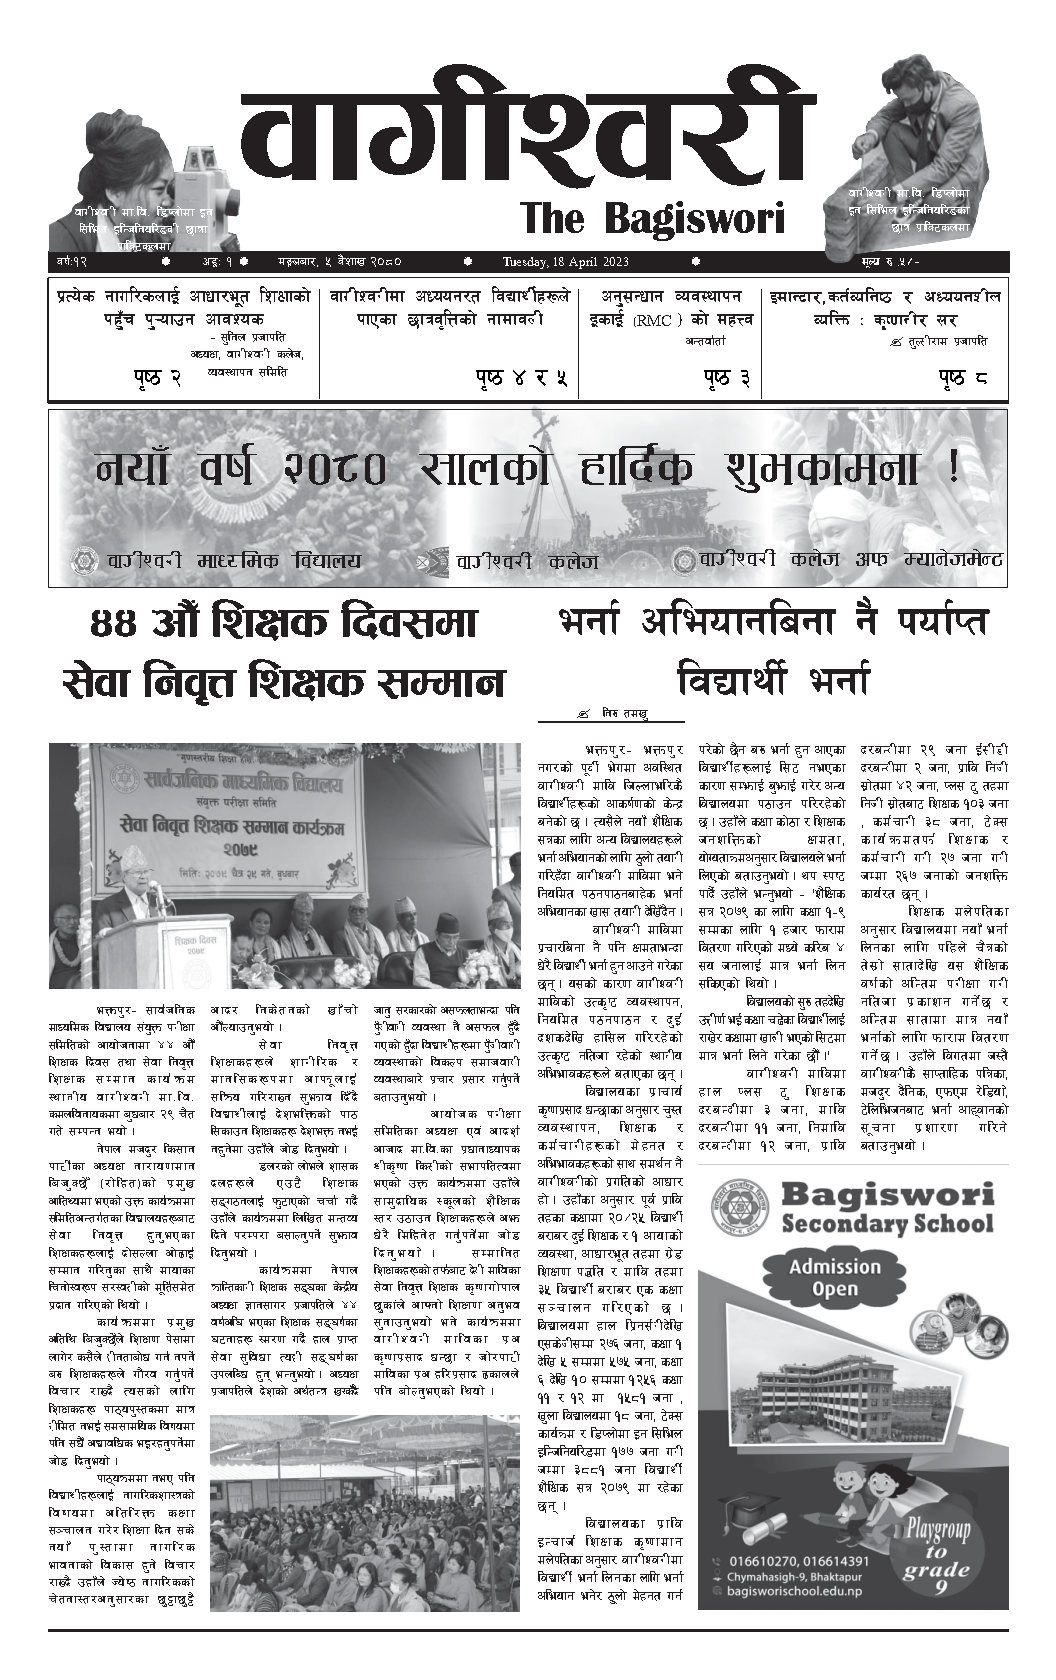 Bagiswori Newspaper Vol 12 issue 1